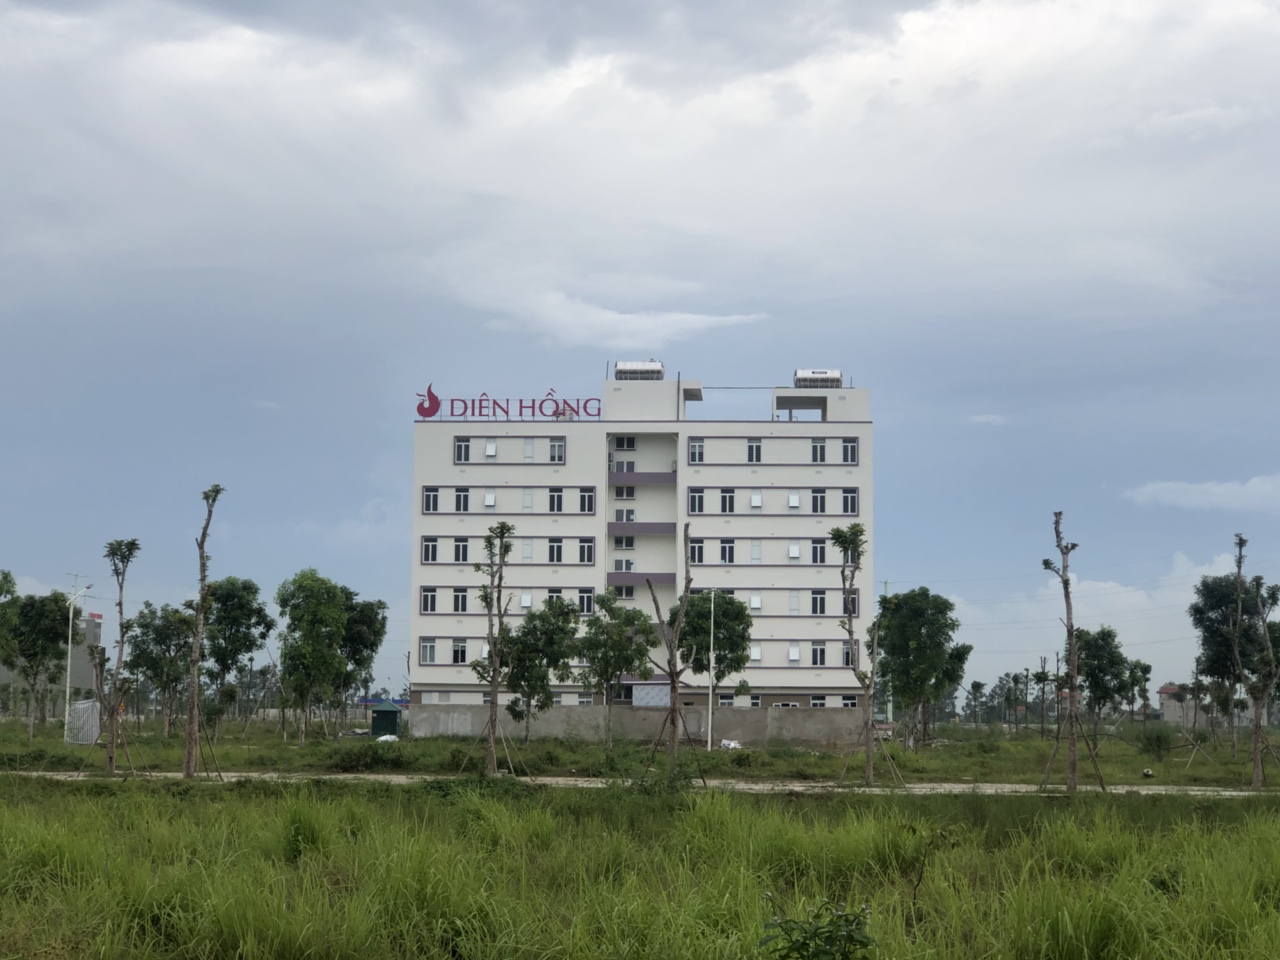 Viện dưỡng lão Diên Hồng trong khu đô thị Thanh Hà Hà Đông